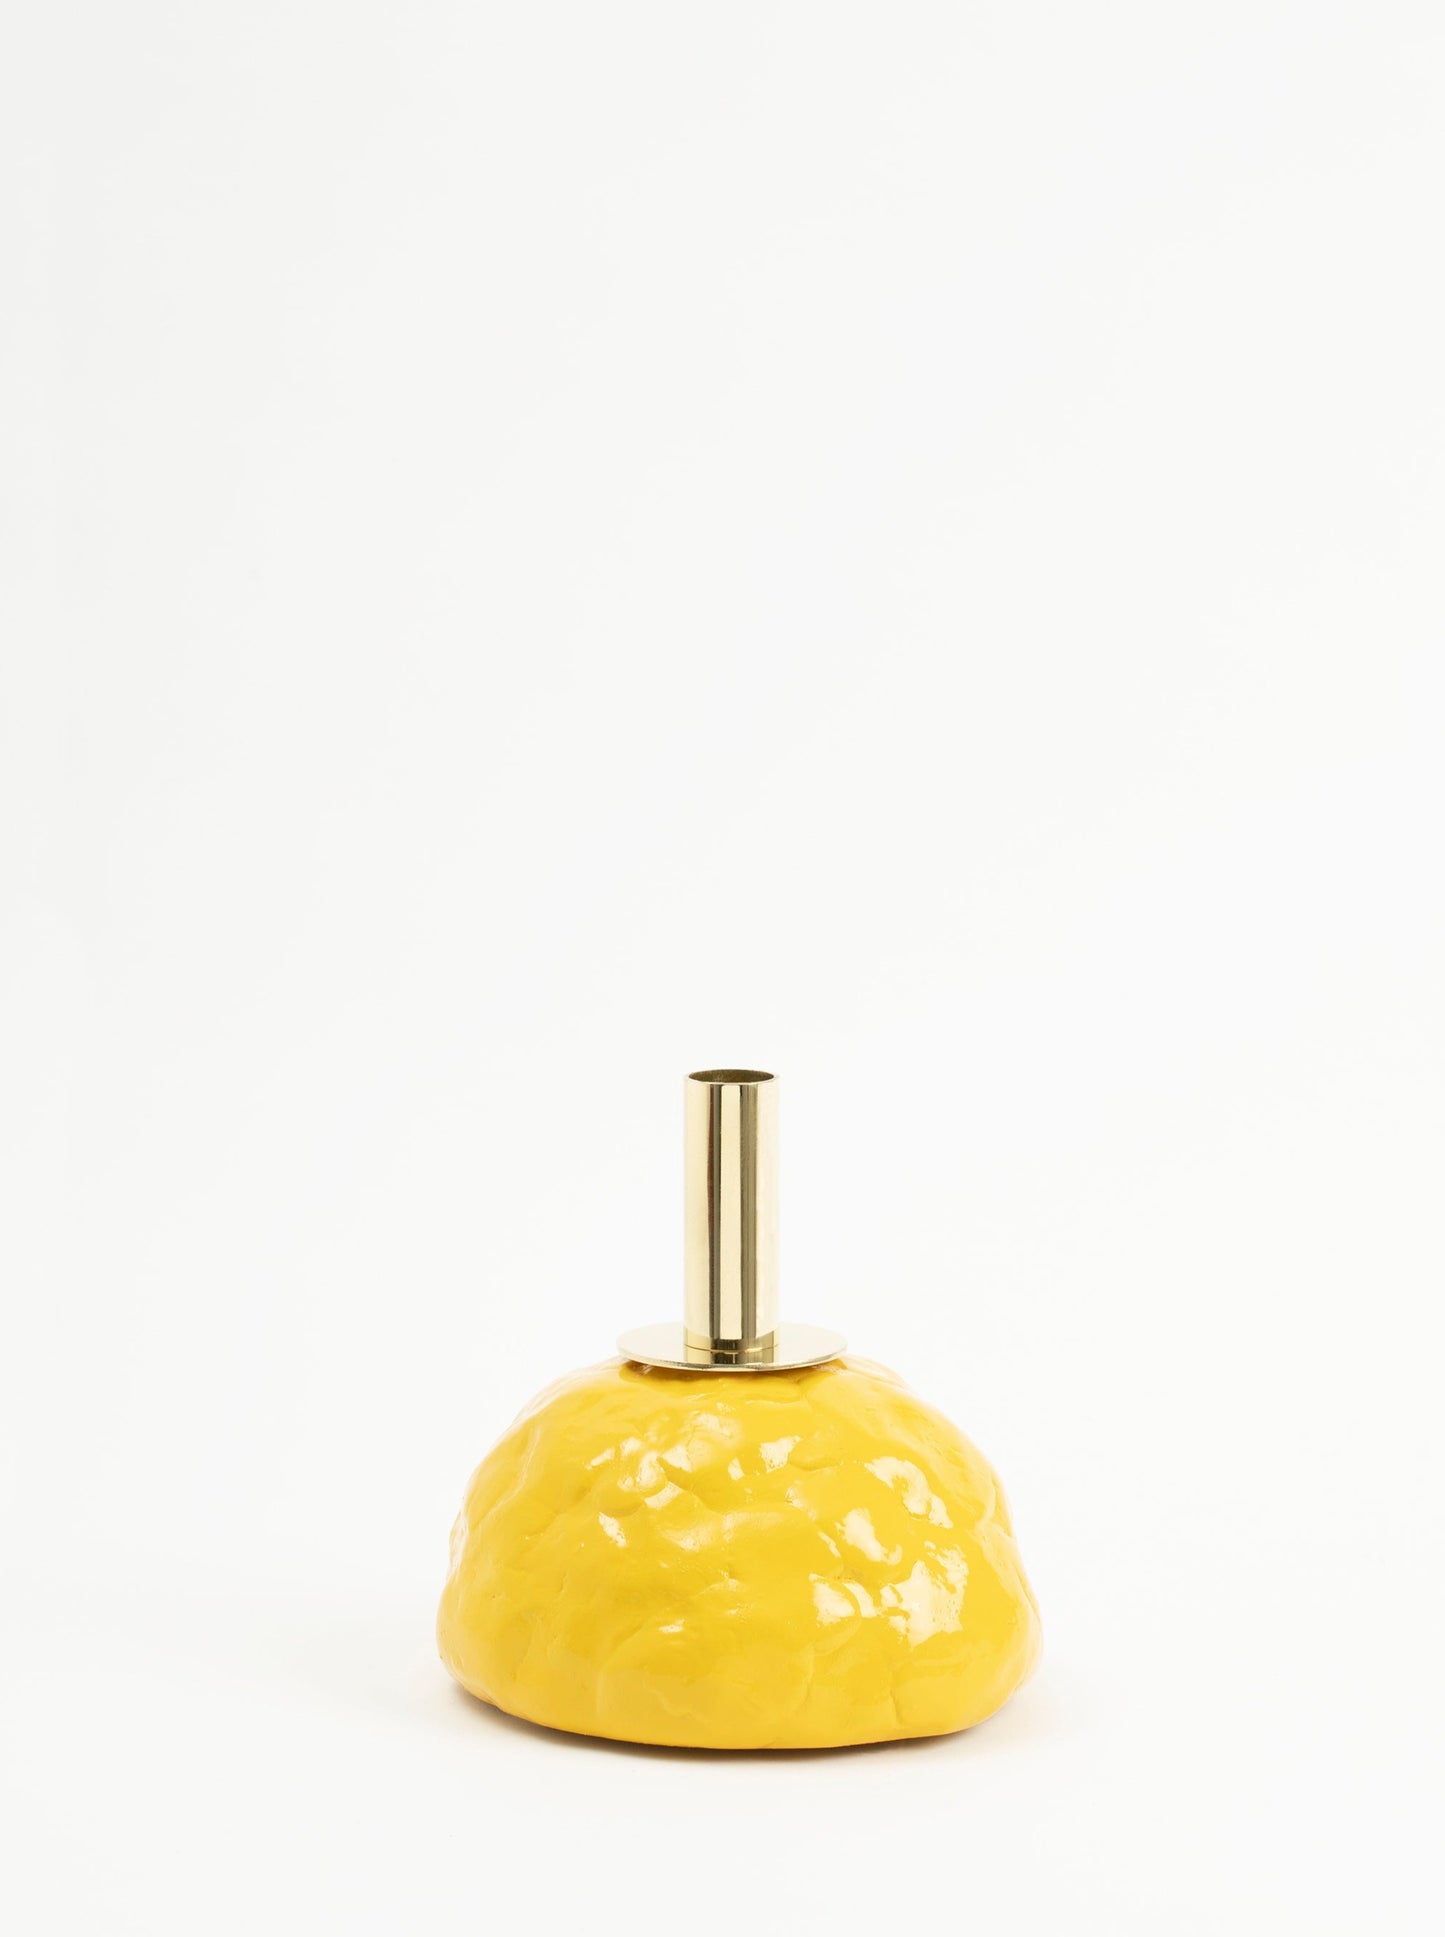 Bougeoir jaune au design brut et chic à la fois, en forme originale de sein, couleur vive et touche de laiton. Vincent Loiret pour Haydée.